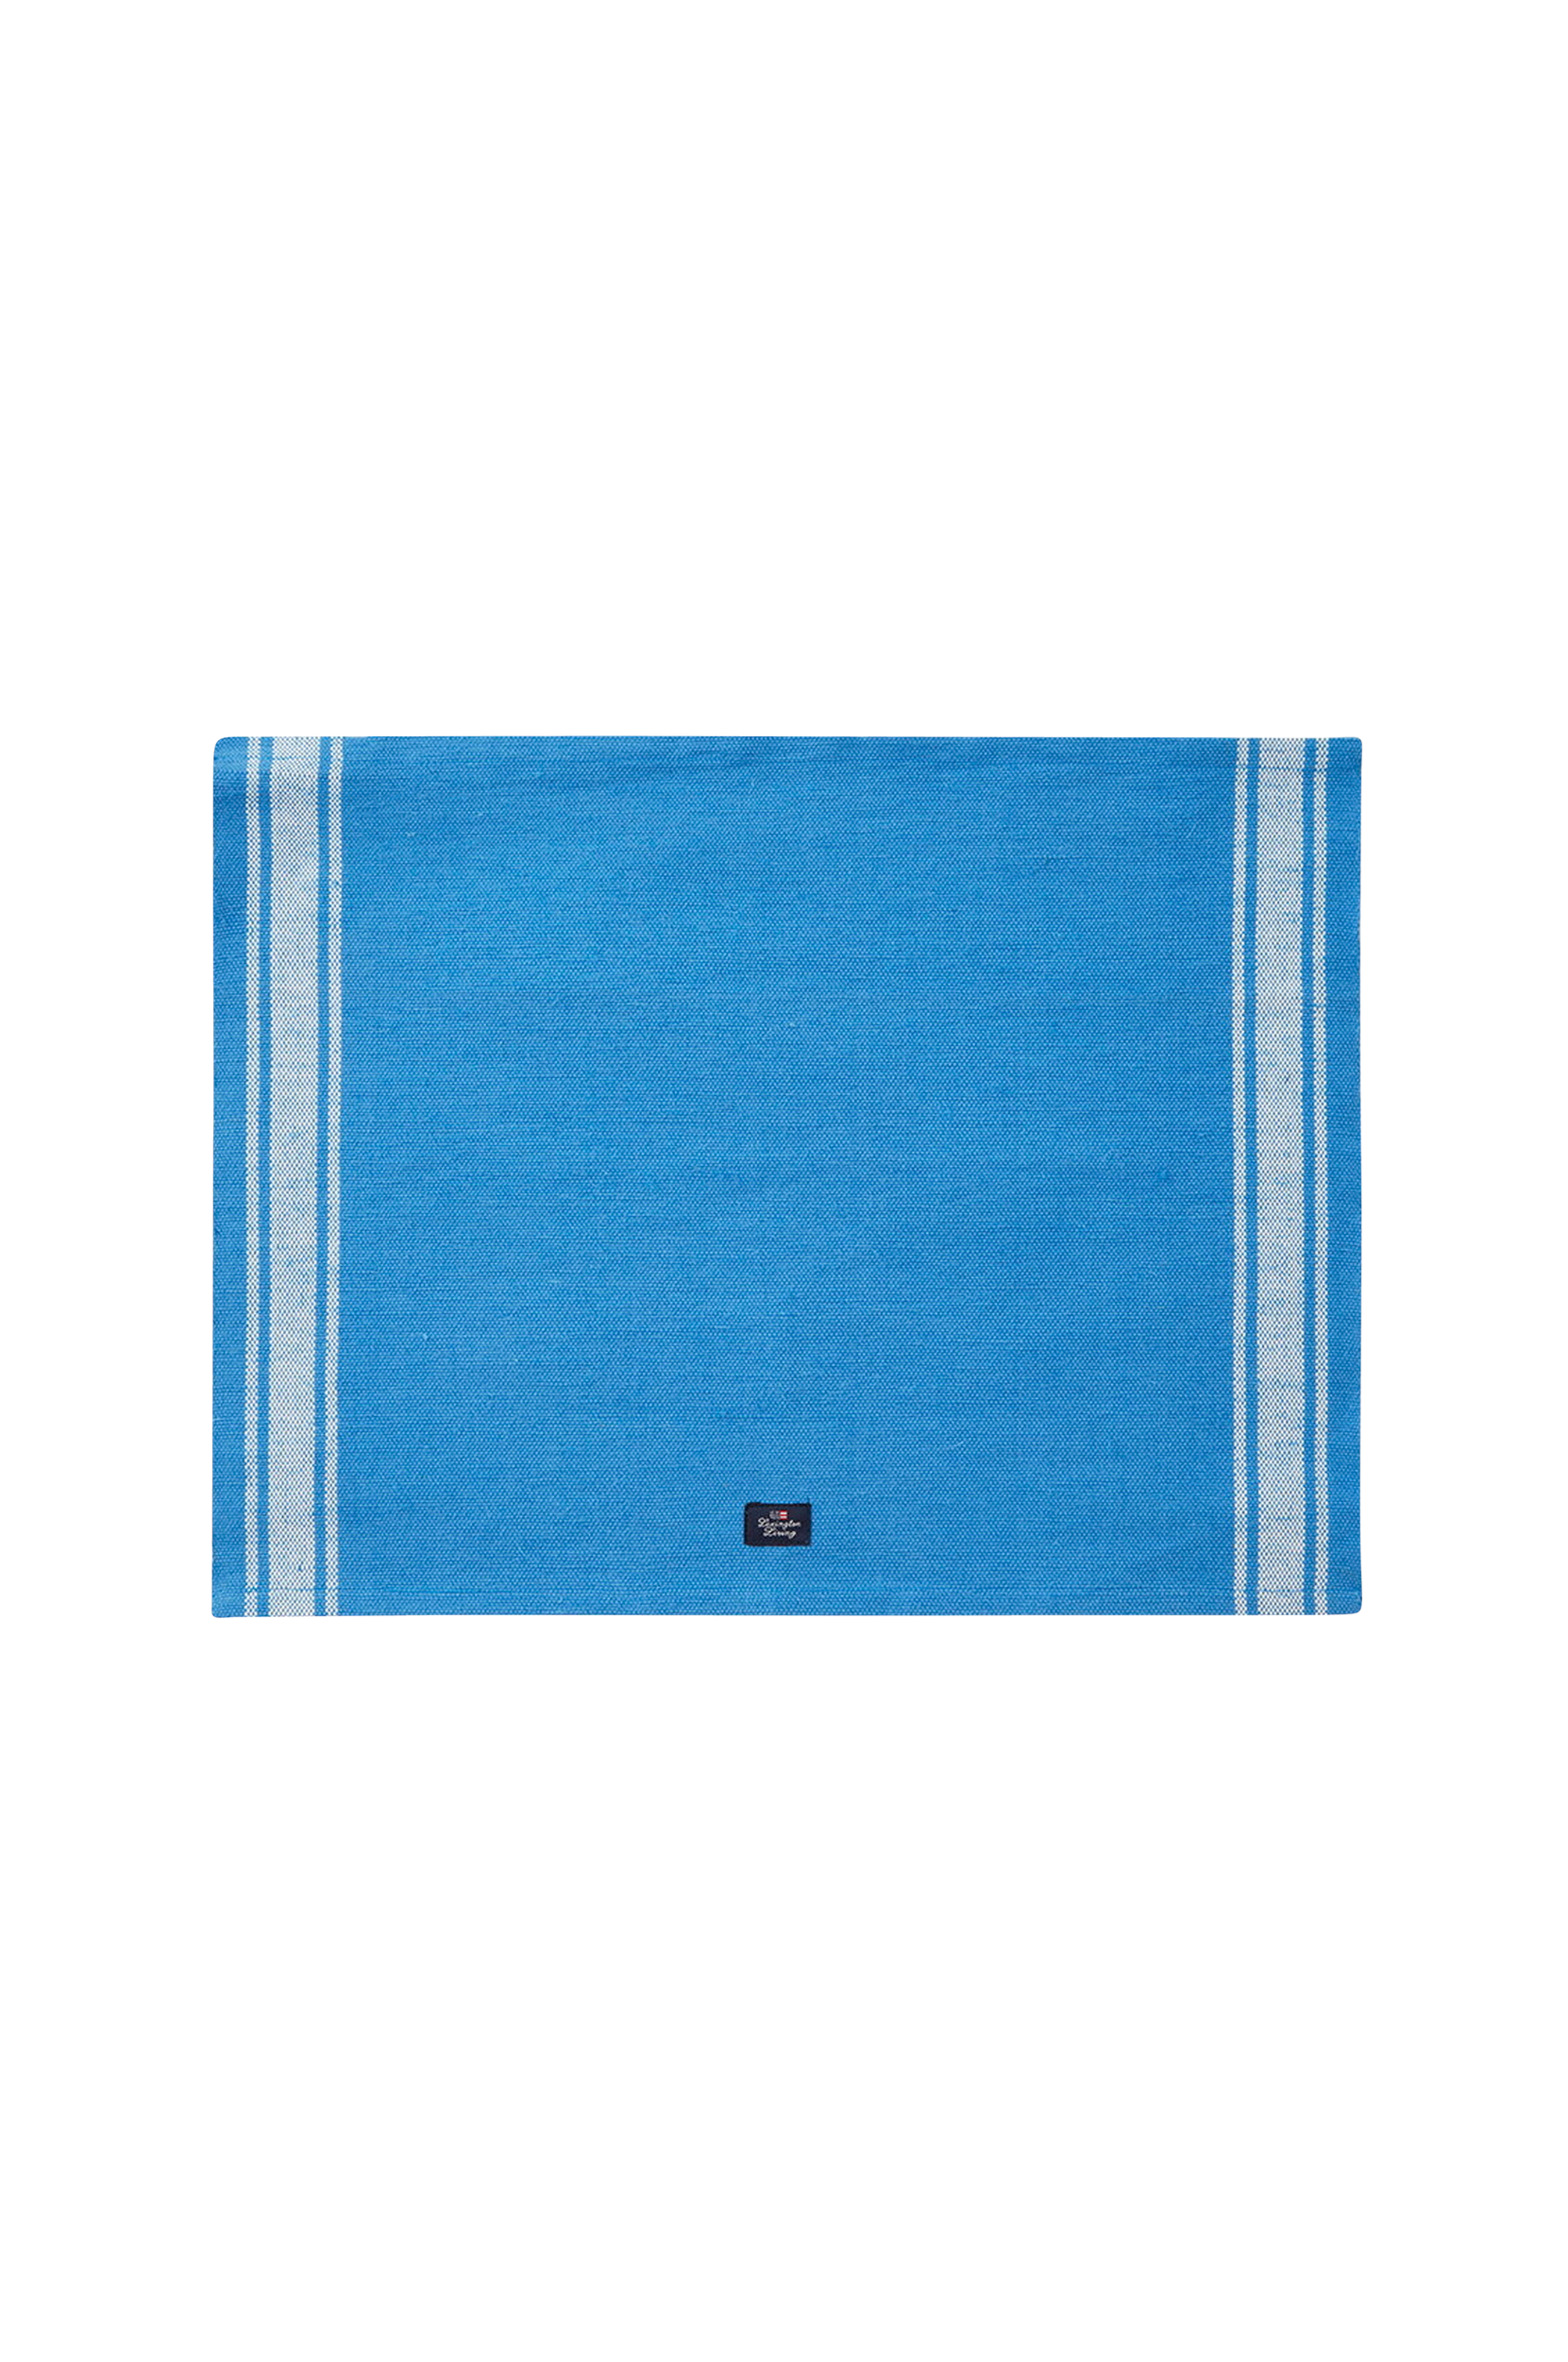 Lexington - Bordstablett Cotton Jute Placemat with Side Stripes - Blå - 40X50